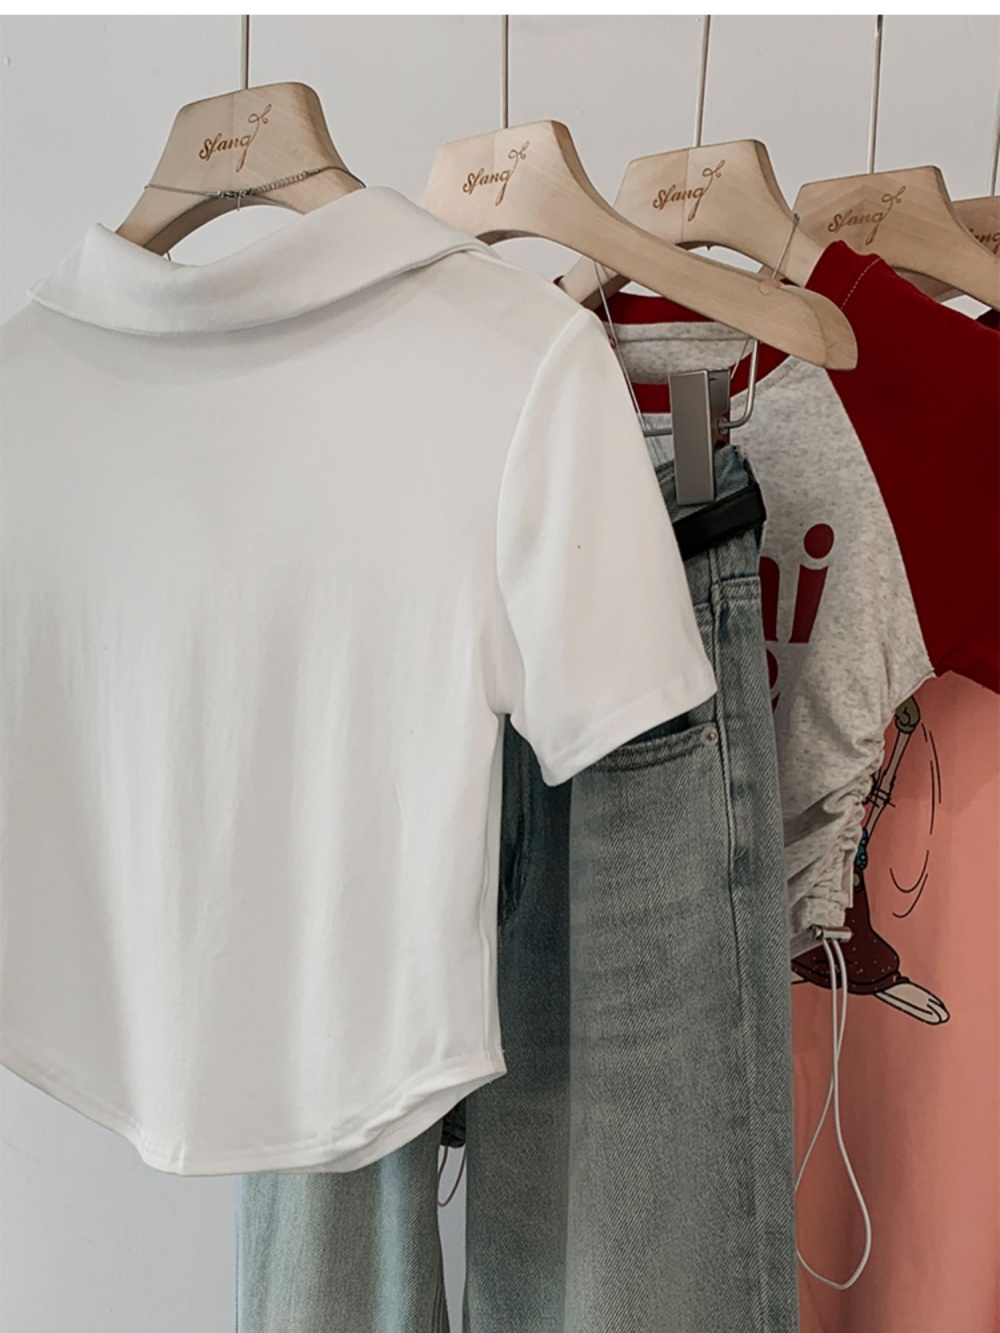 White short sleeve tops summer T-shirt for women